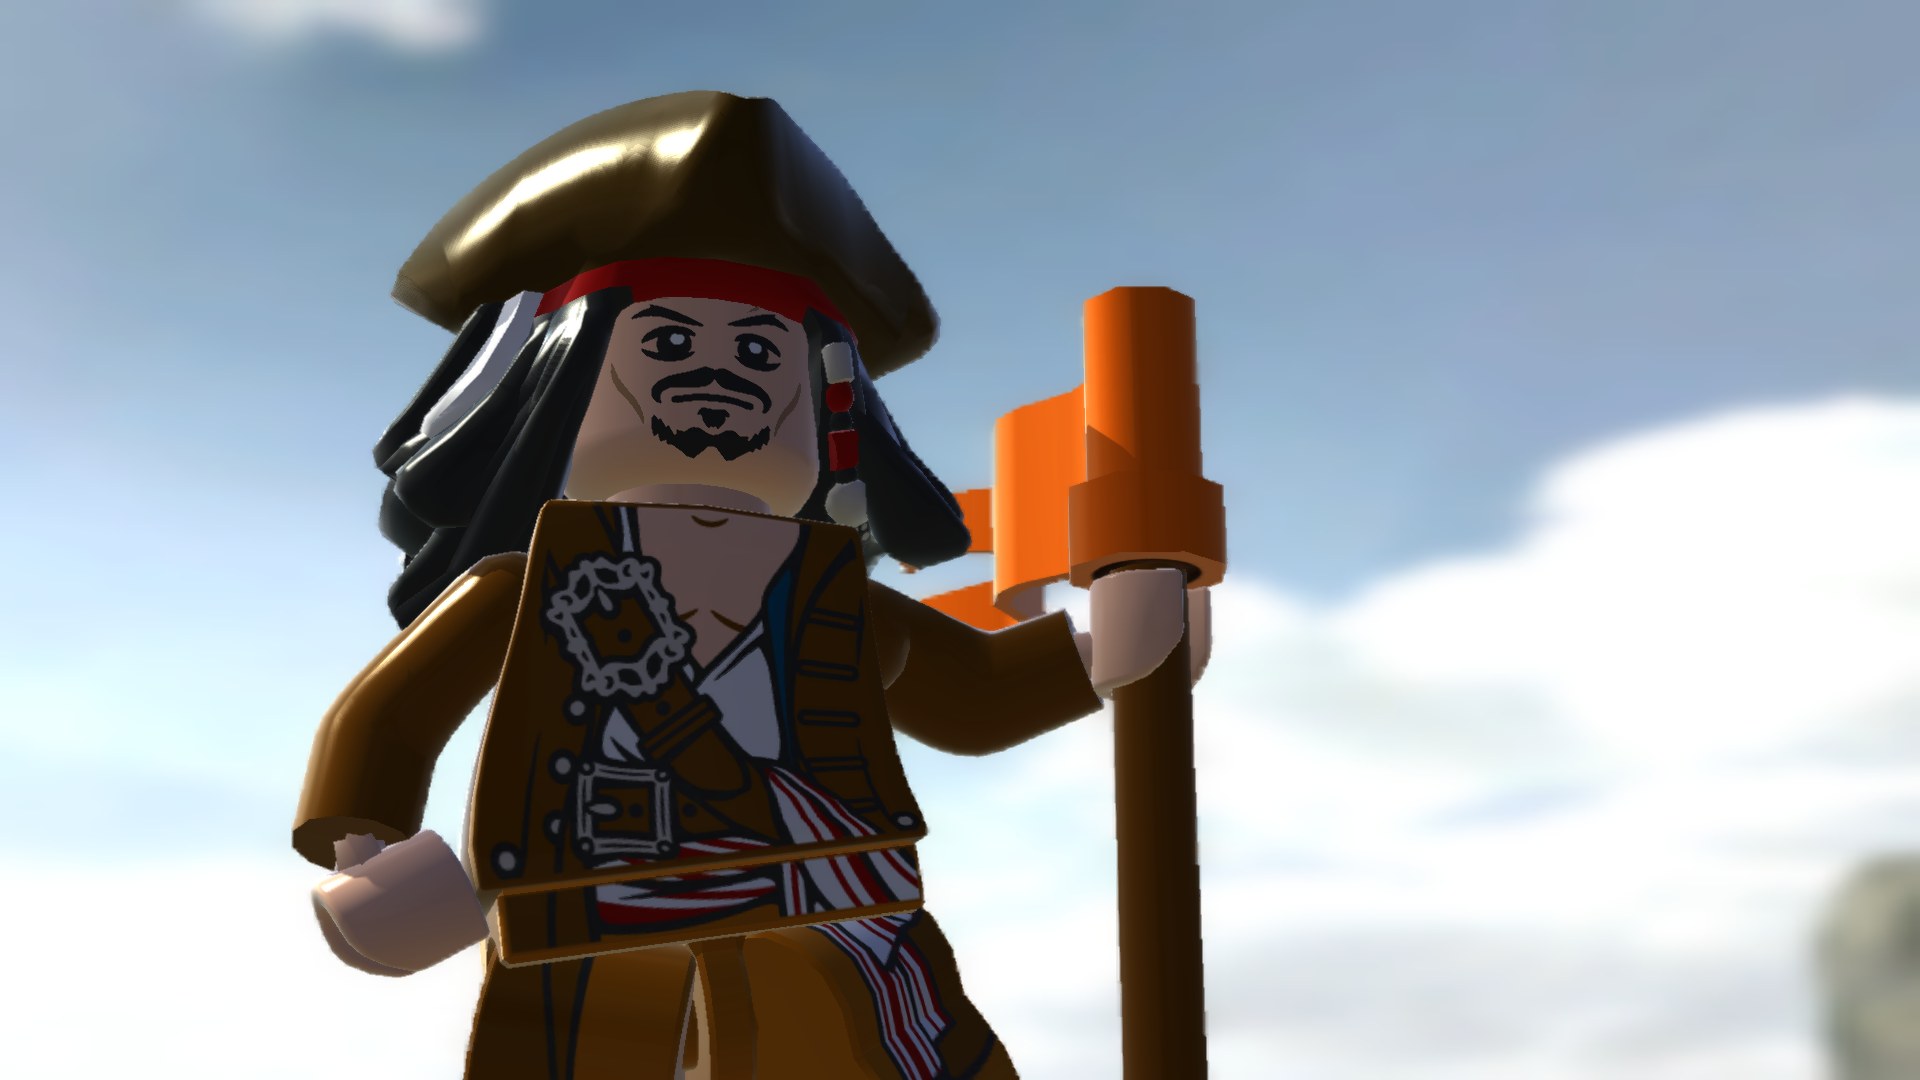 Скачать обои Lego Пираты Карибского Моря: Видеоигра на телефон бесплатно